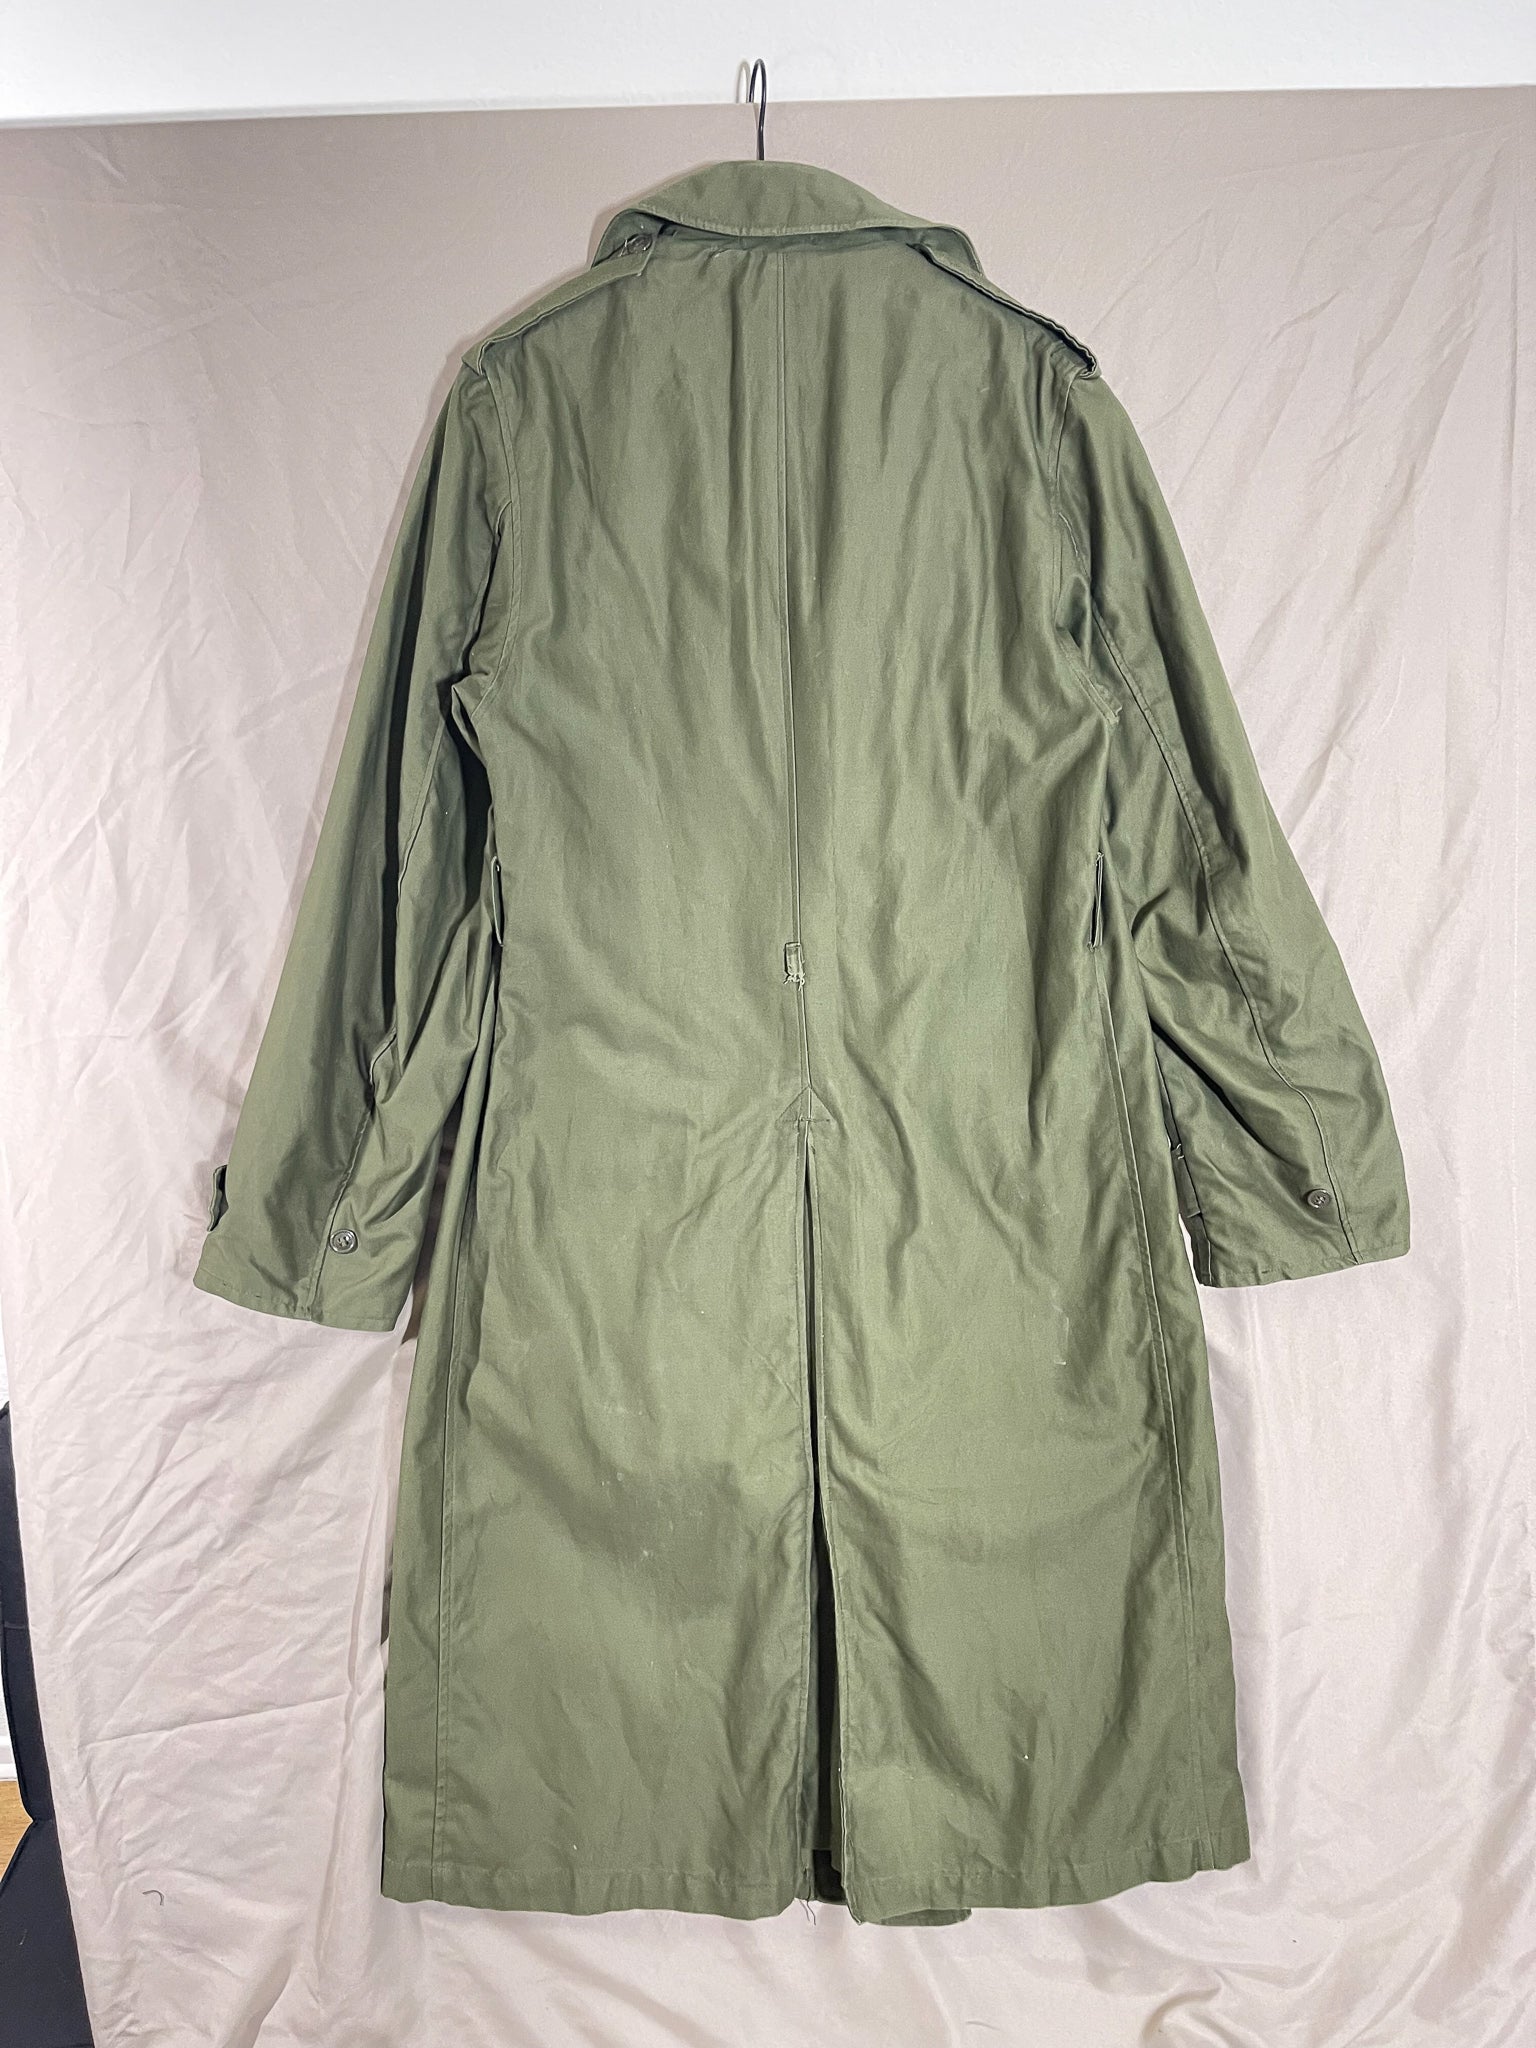 Repaired 1960s Khaki Green OG-107 Overcoat (M's US Med Long)